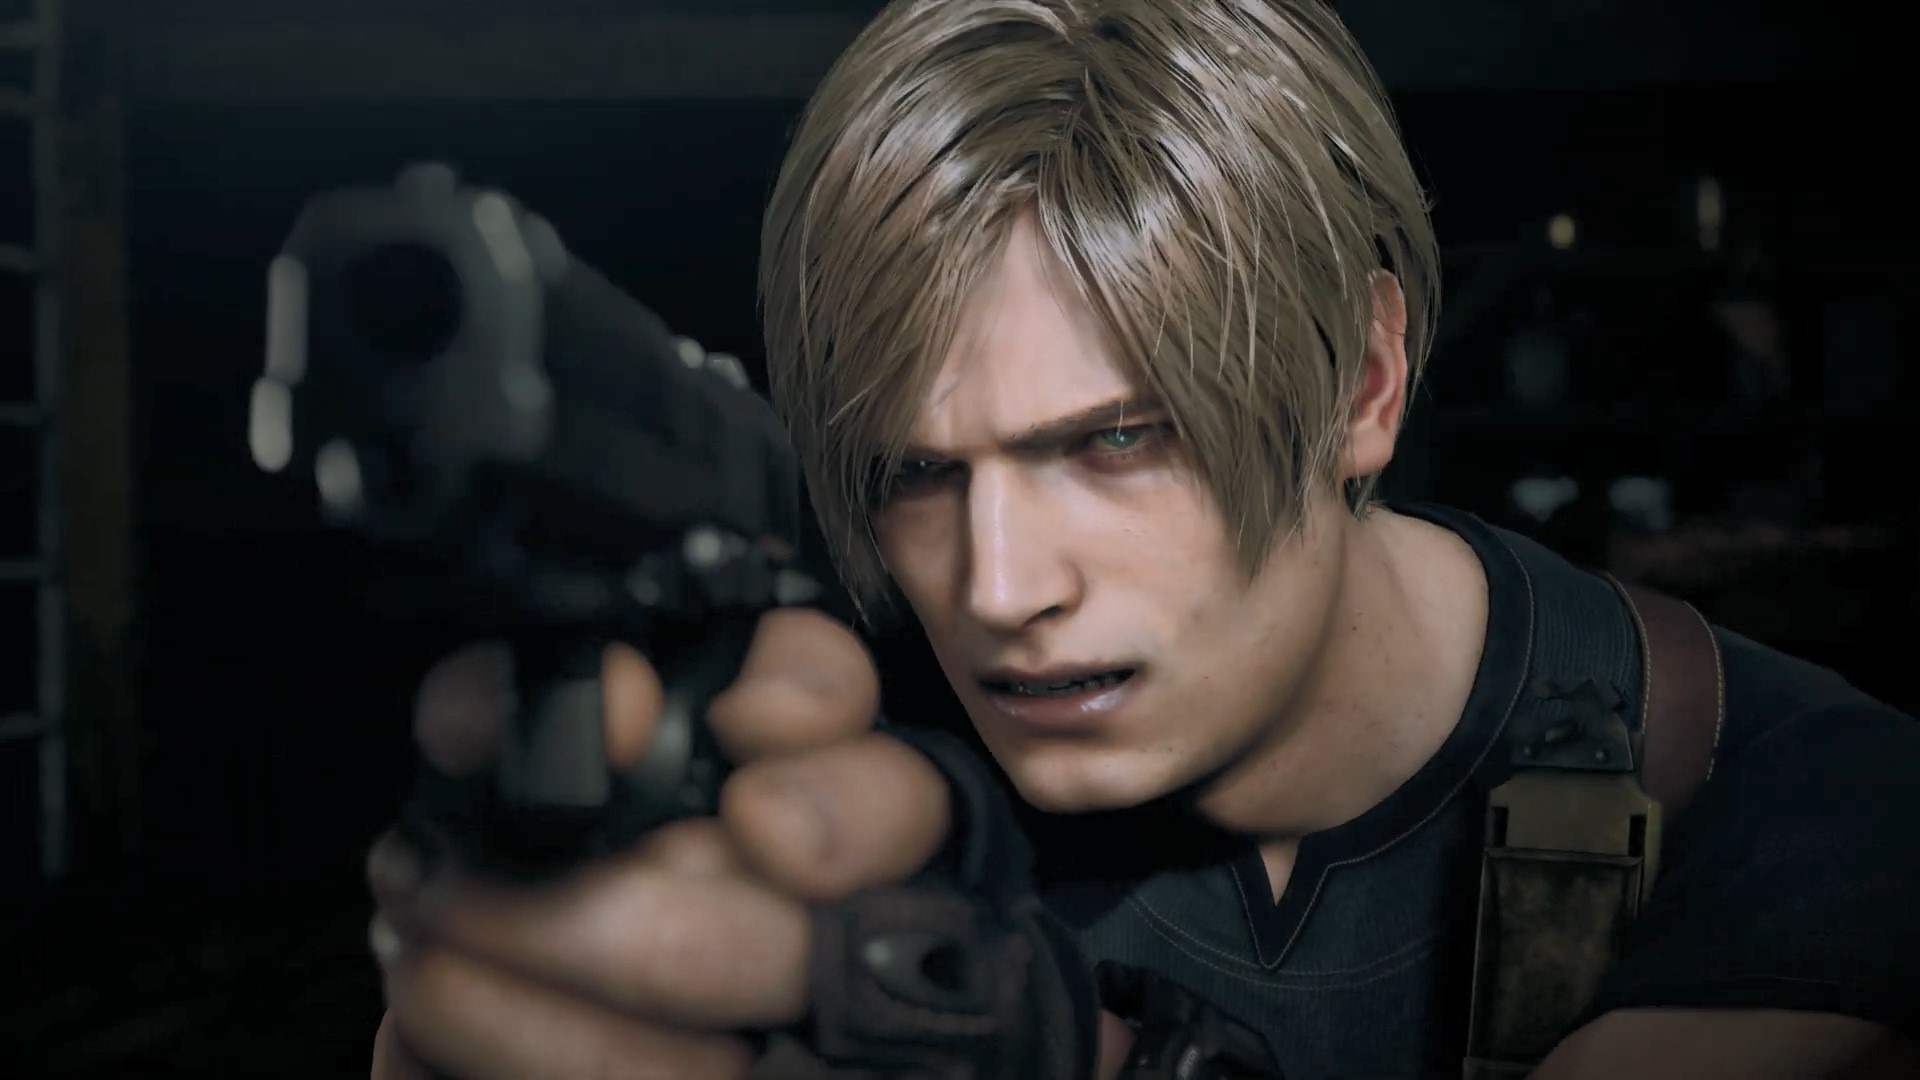 Resident Evil 4 Remake” estreia no Metacritic com nota acima de 90 - POPline